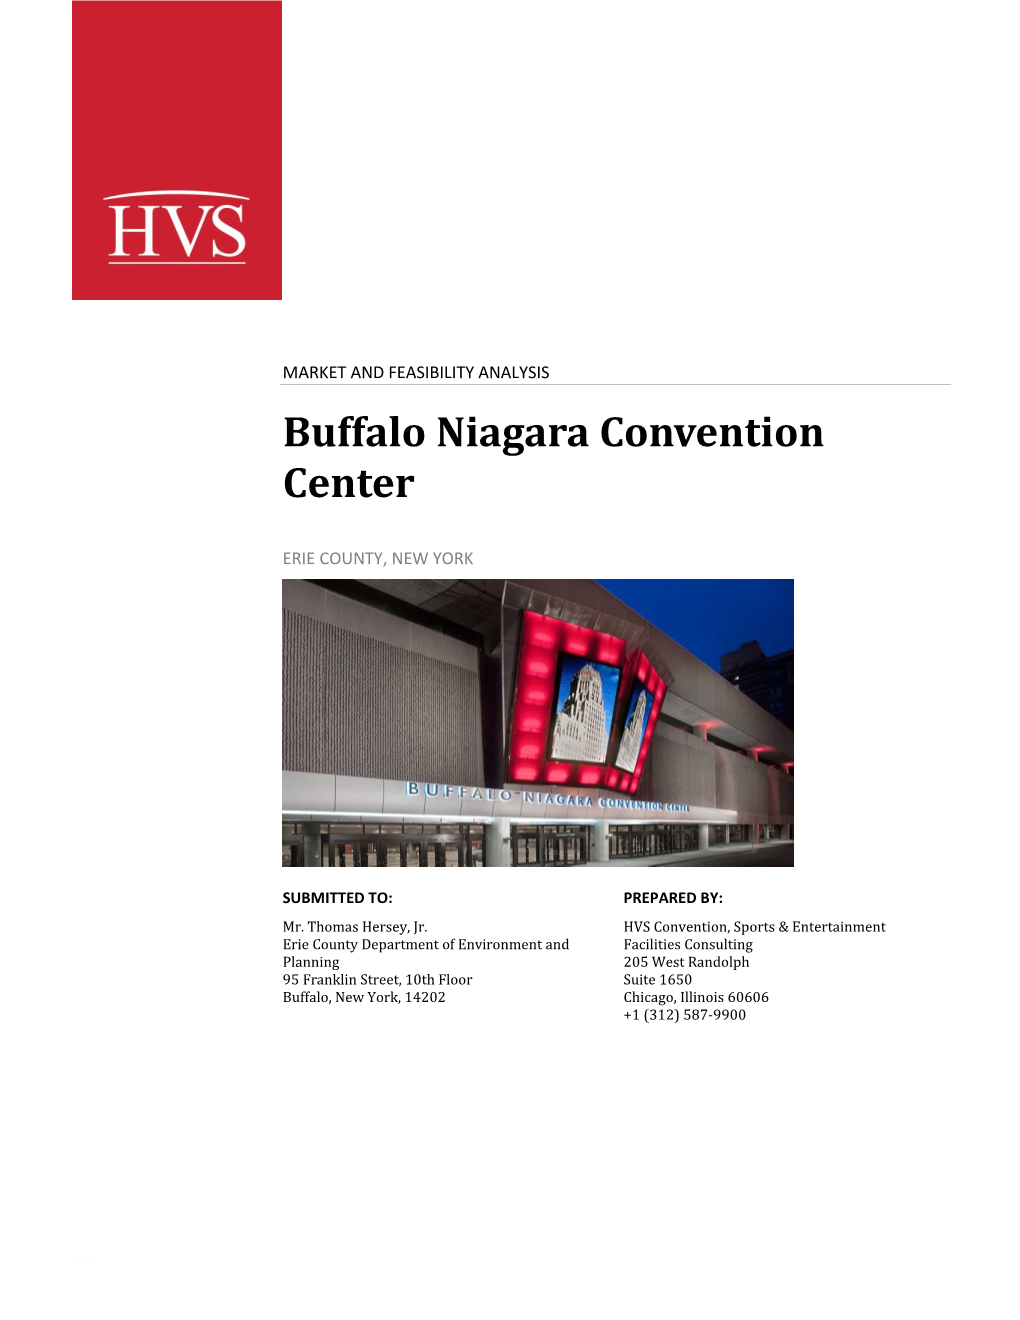 Buffalo Niagara Convention Center